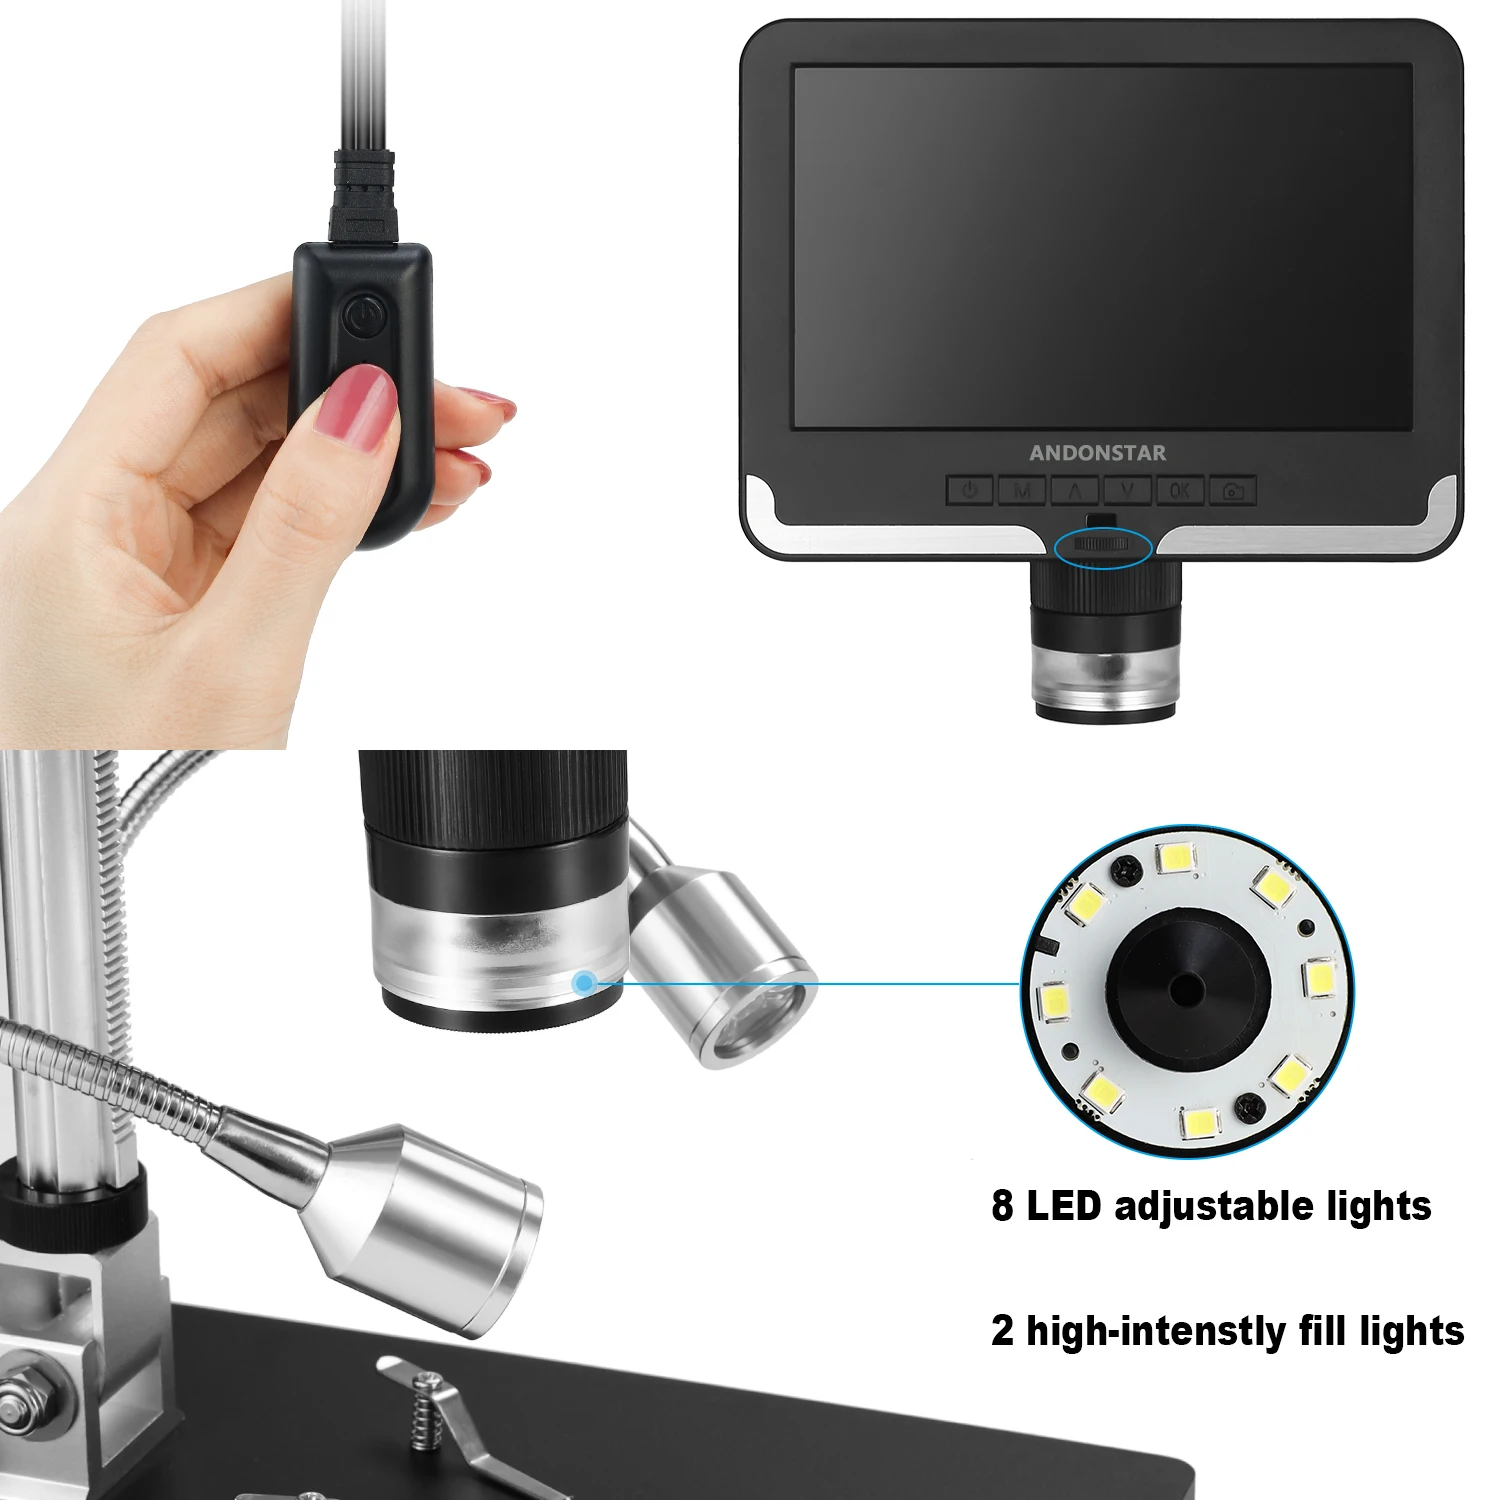 Microscopio per saldatura digitale AD206, 1080P, riparazione orologio telefono, SMD / SMT, bianco e nero